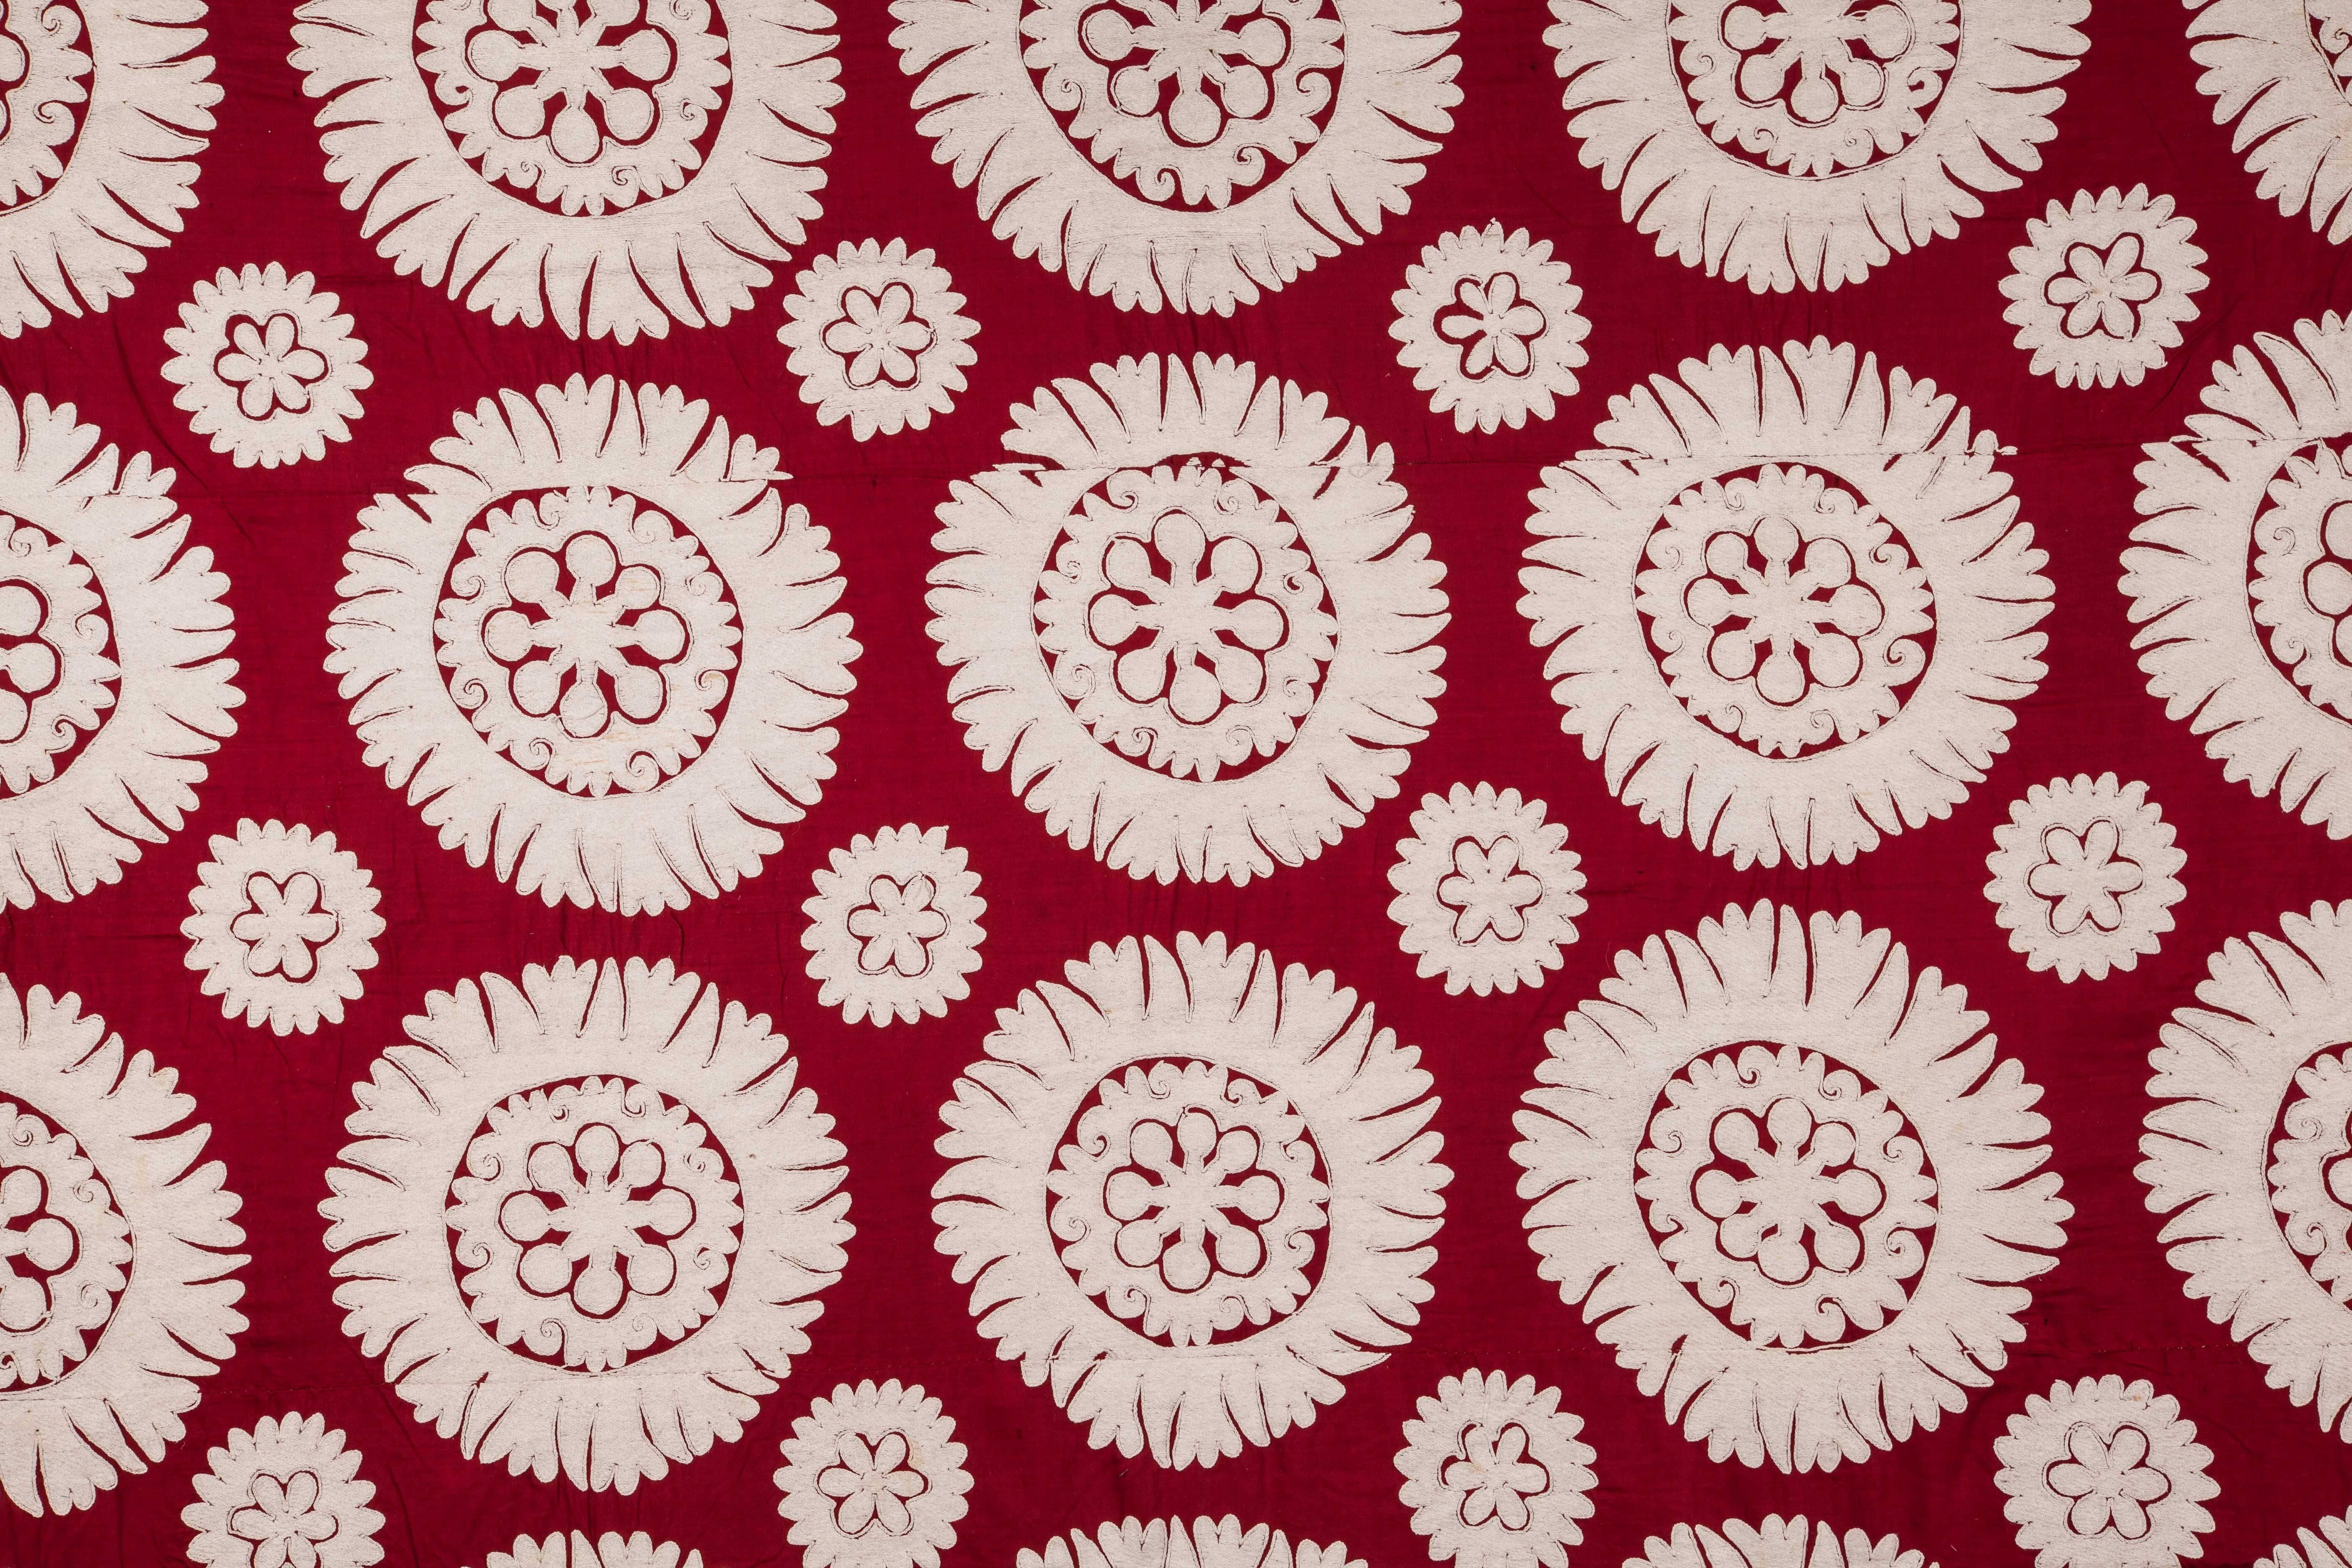 Embroidered Mid-20th Century Uzbek Samarkand All Cotton Suzani